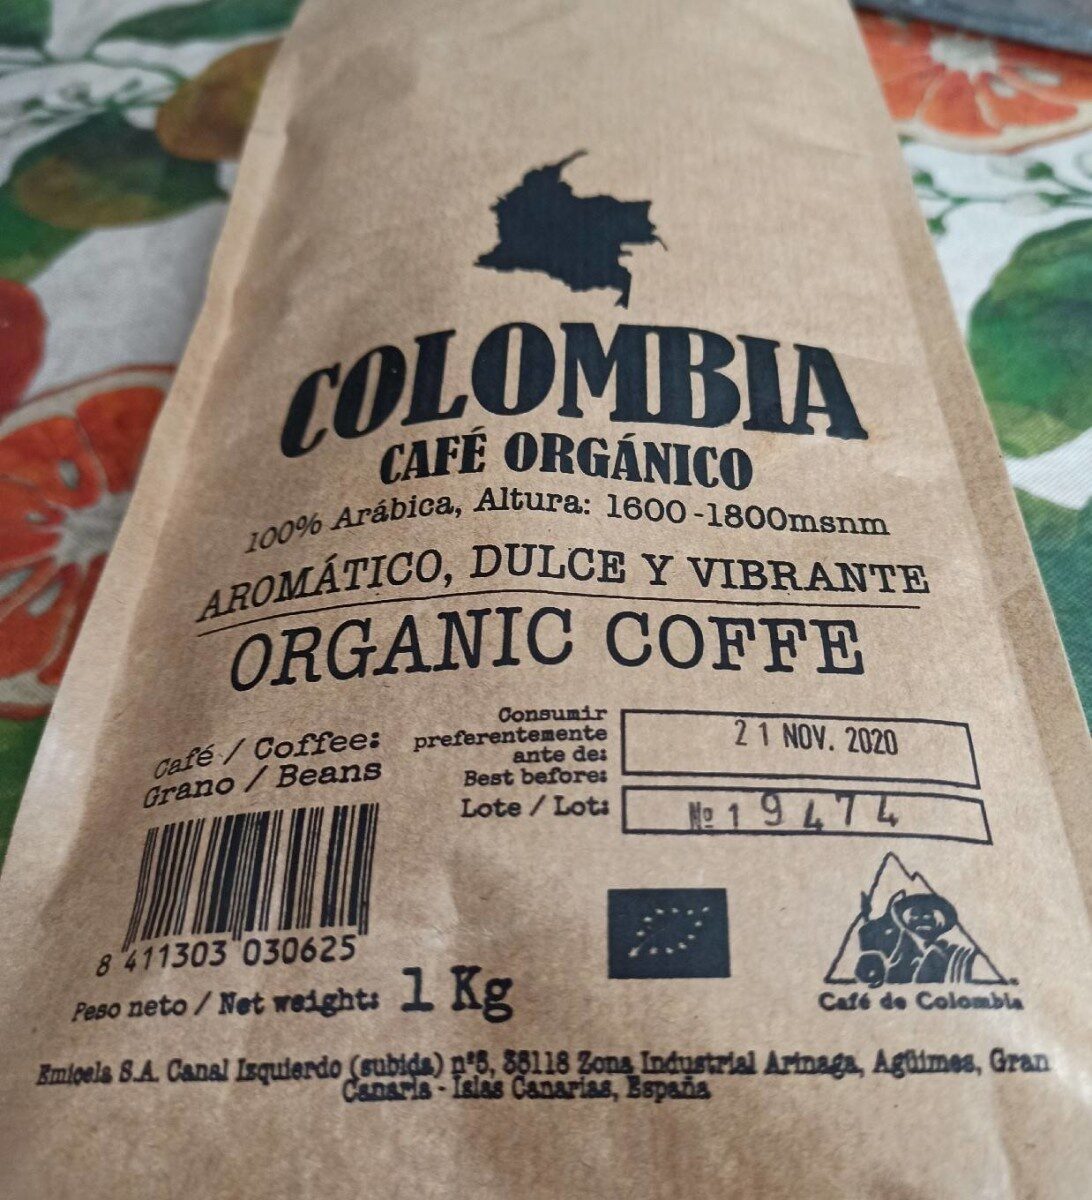 Colombia café orgánico - Información nutricional